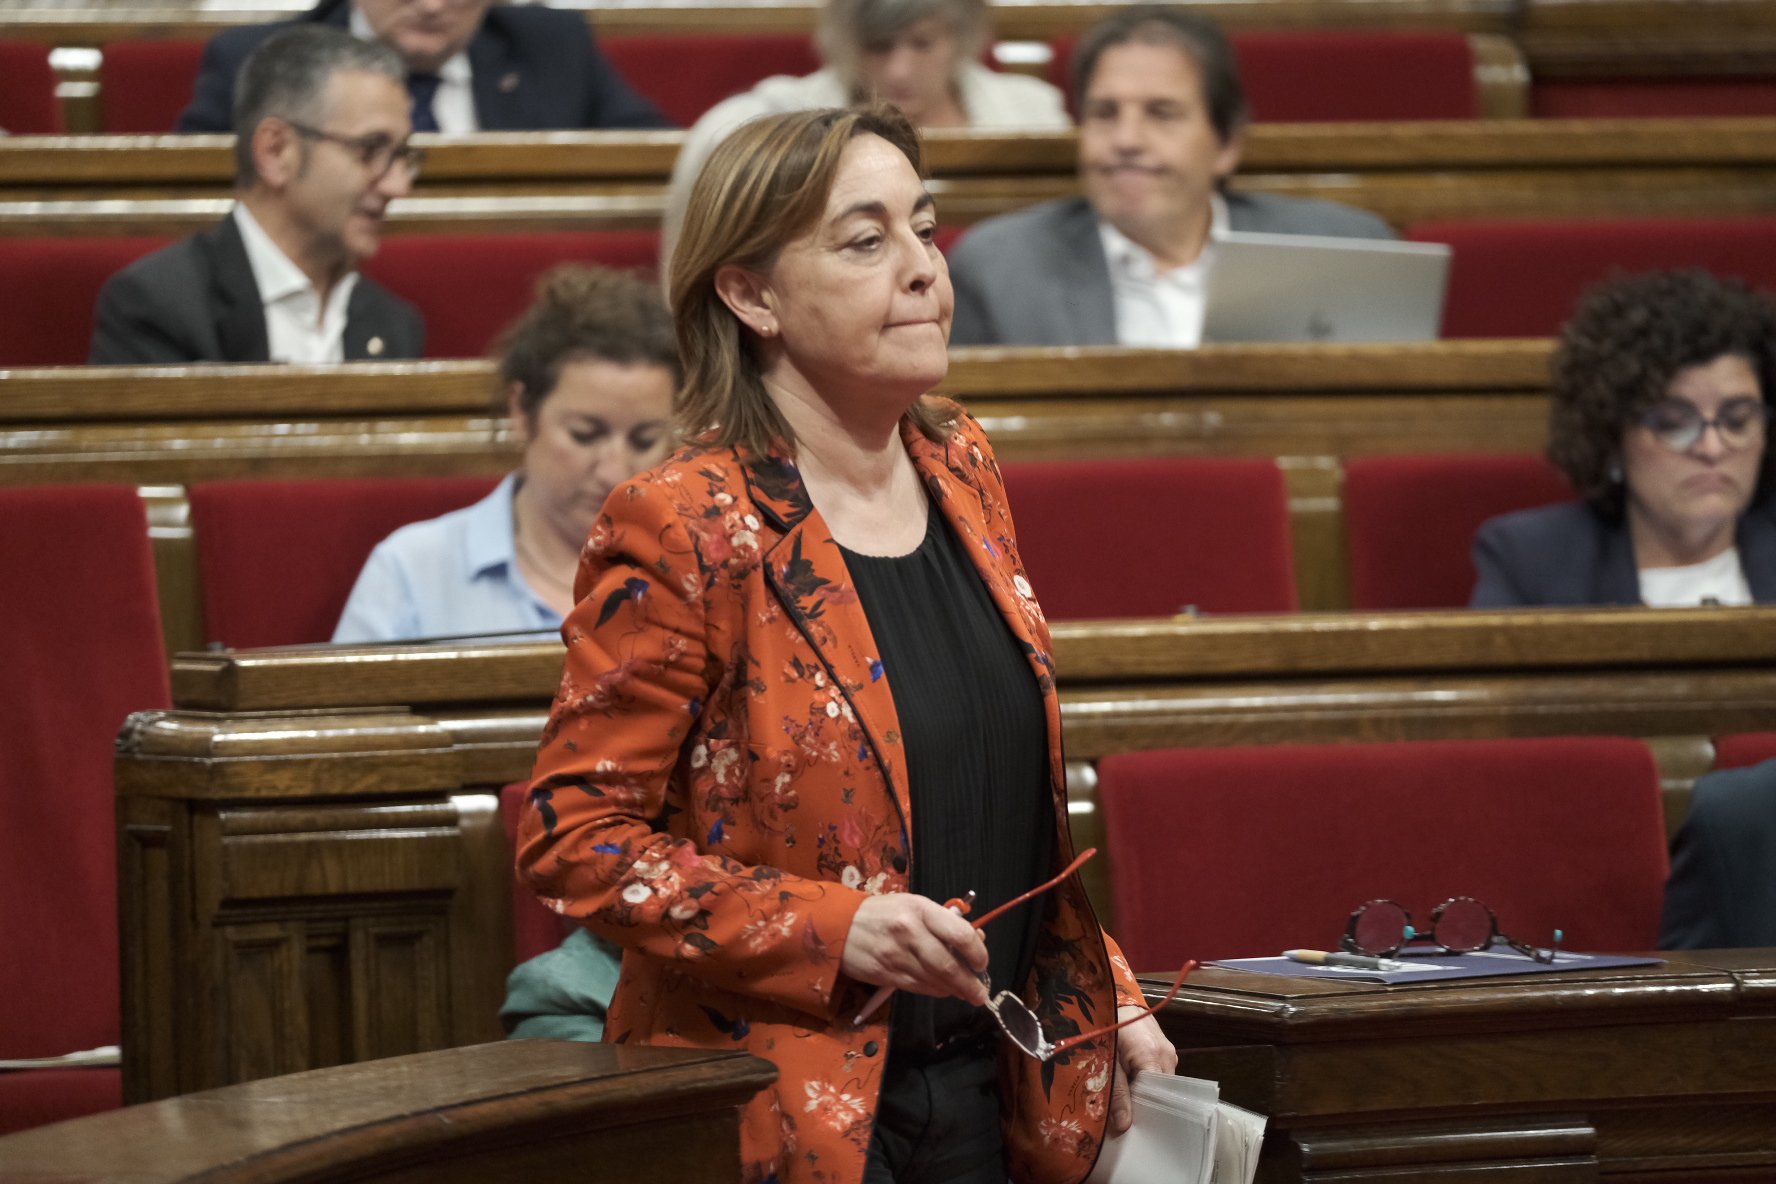 A Sílvia Paneque (PSC) se li complica la negociació per ser alcaldessa de Girona